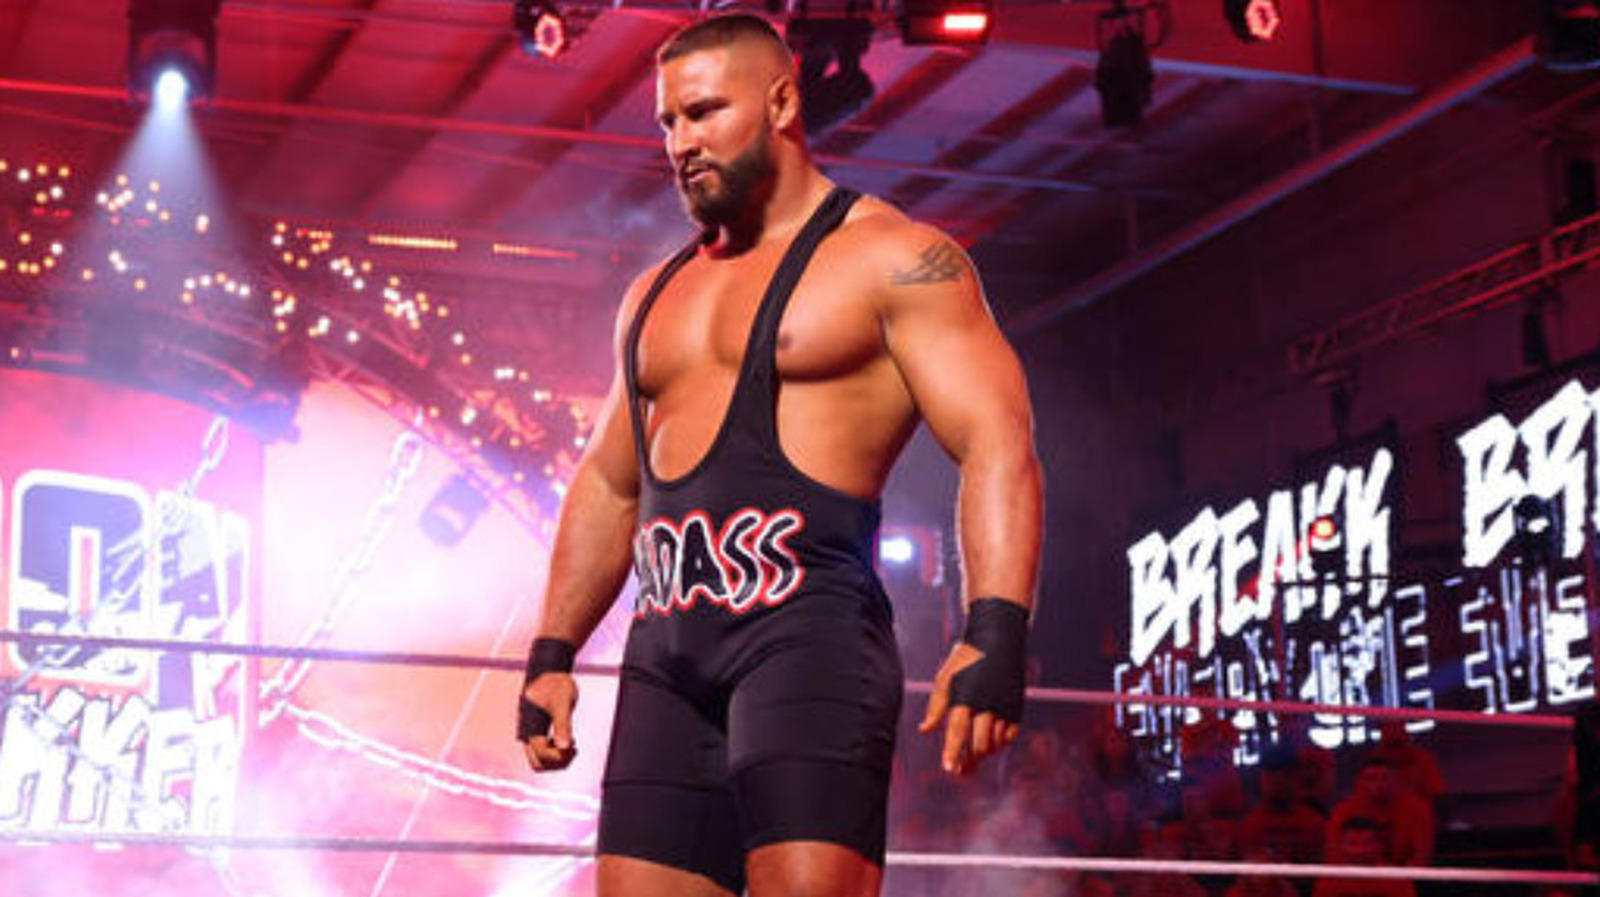 La leyenda de la WWE The Undertaker evalúa el desarrollo de la estrella de NXT Bron Breakker